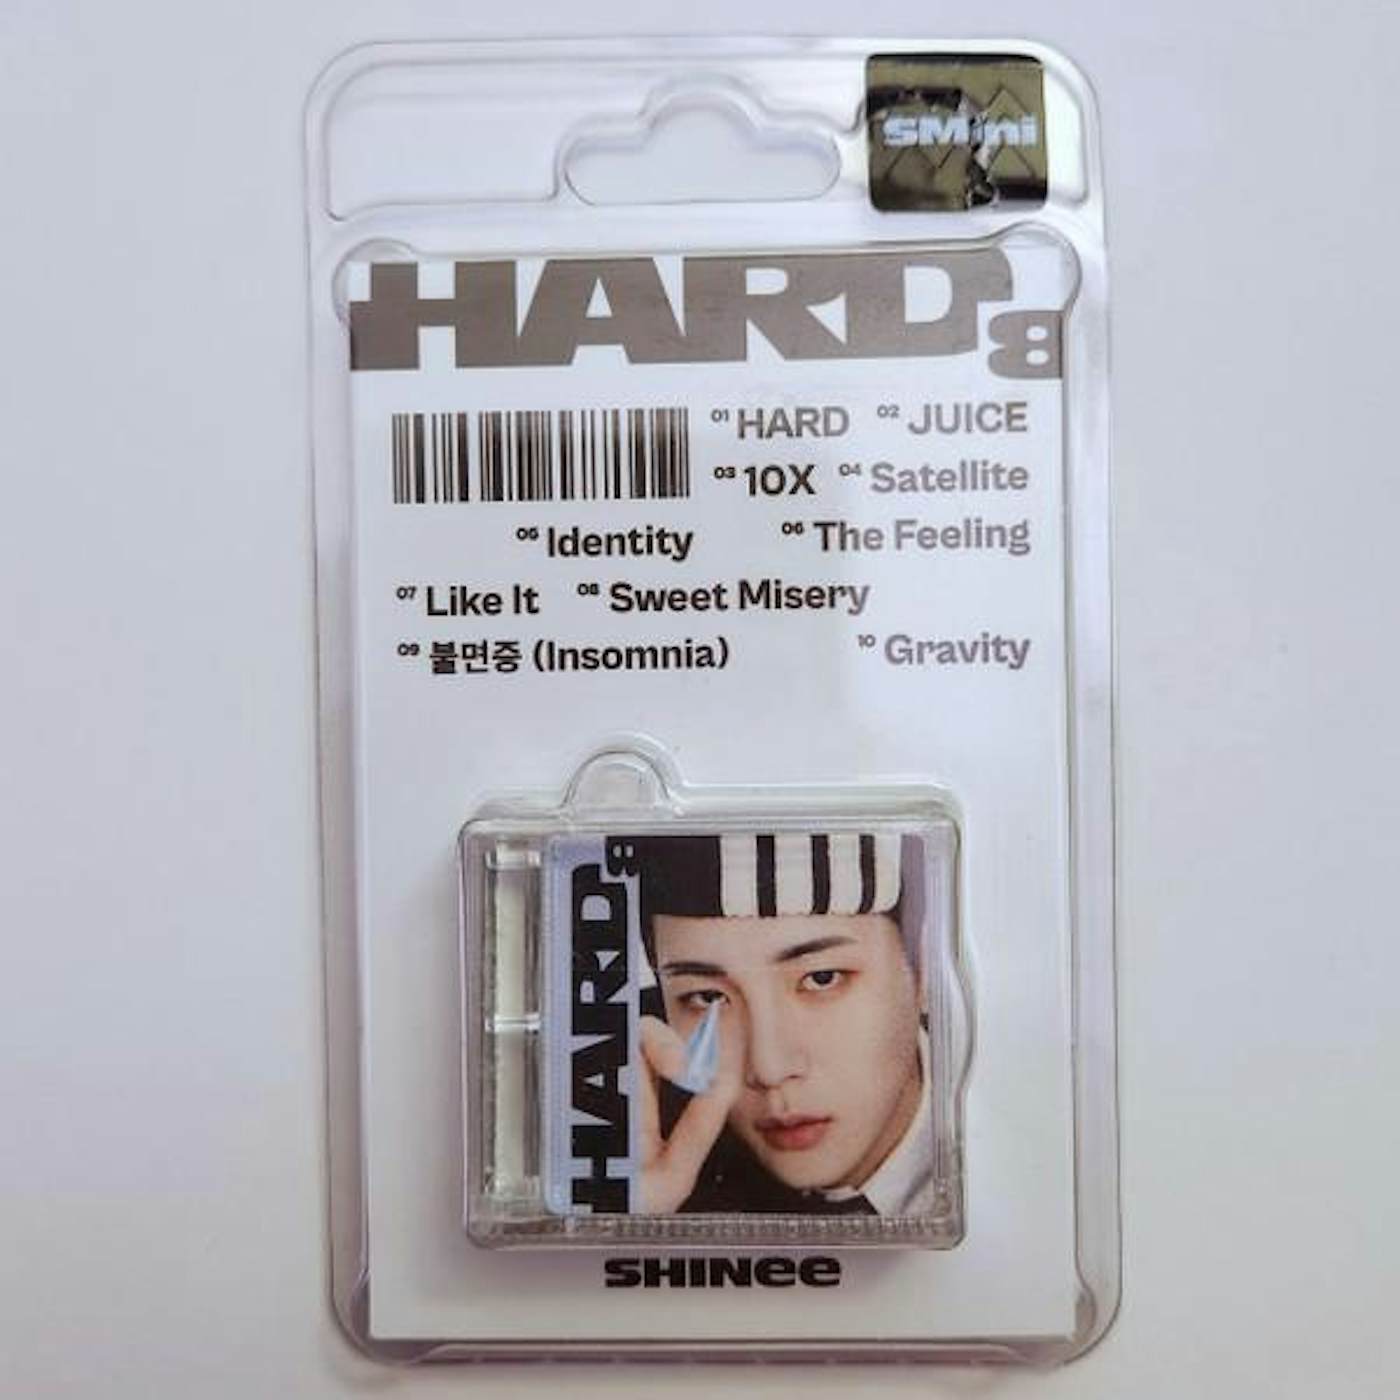 SHINee HARD VOL.8 (SMINI VER.) CD